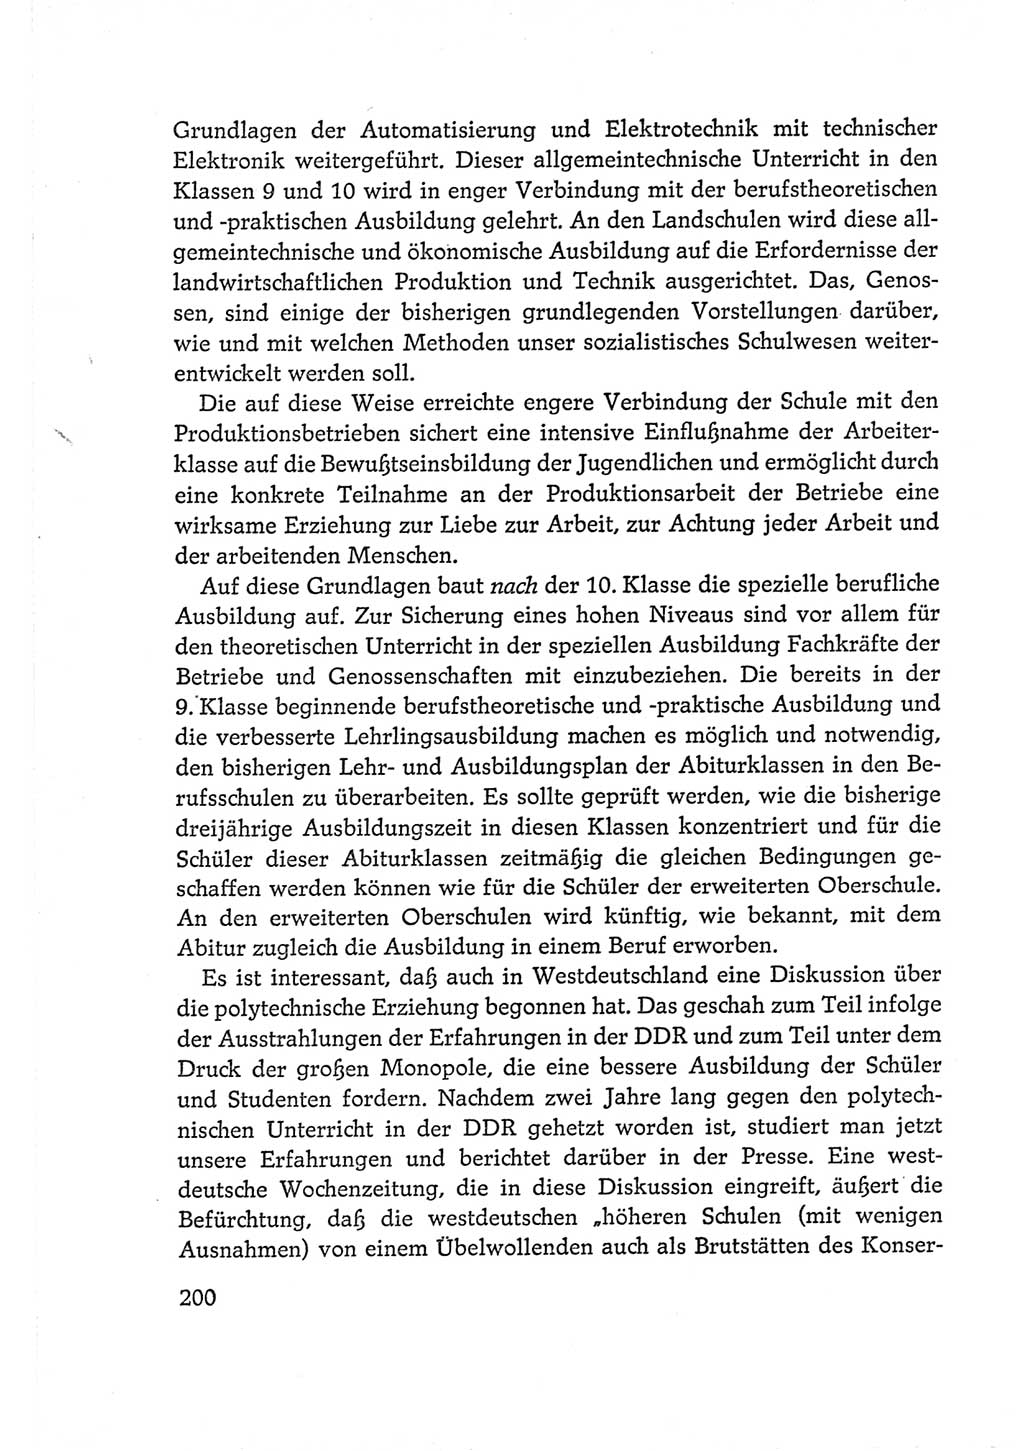 Protokoll der Verhandlungen des Ⅵ. Parteitages der Sozialistischen Einheitspartei Deutschlands (SED) [Deutsche Demokratische Republik (DDR)] 1963, Band Ⅰ, Seite 200 (Prot. Verh. Ⅵ. PT SED DDR 1963, Bd. Ⅰ, S. 200)